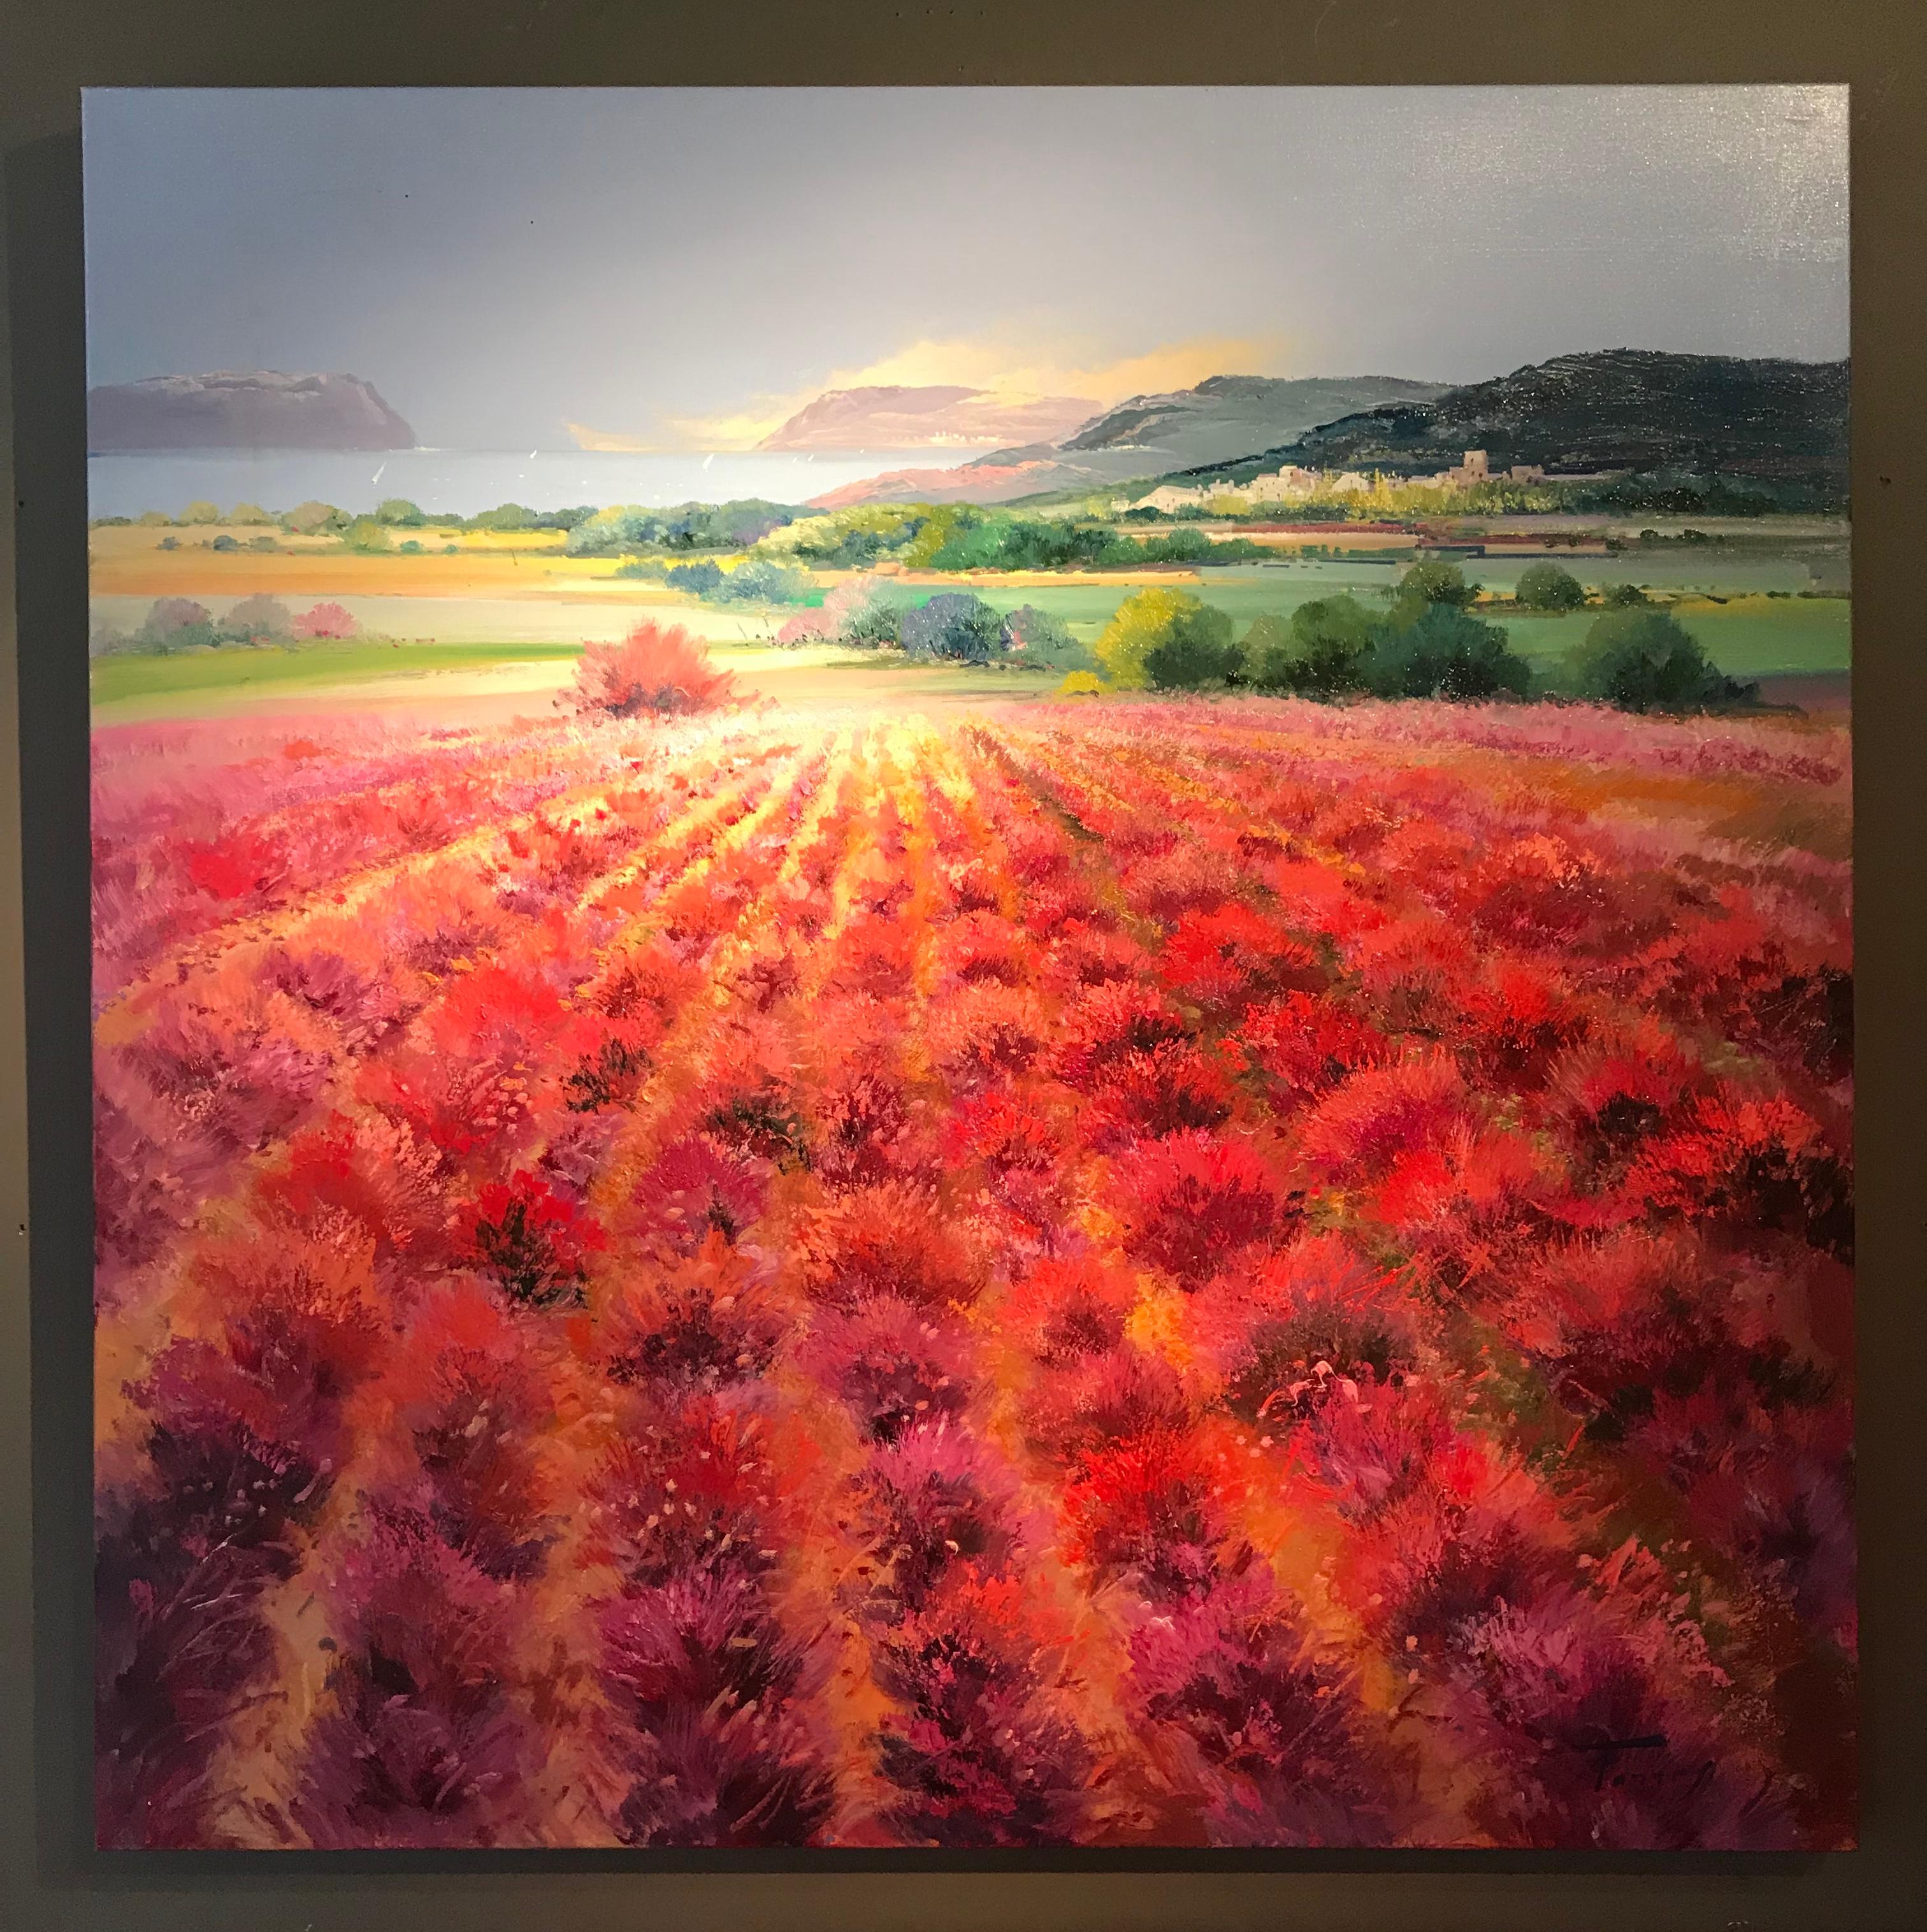 Peinture contemporaine d'un paysage rural rouge avec arbres 'Scarlet Meadow' by  - Painting de Torres